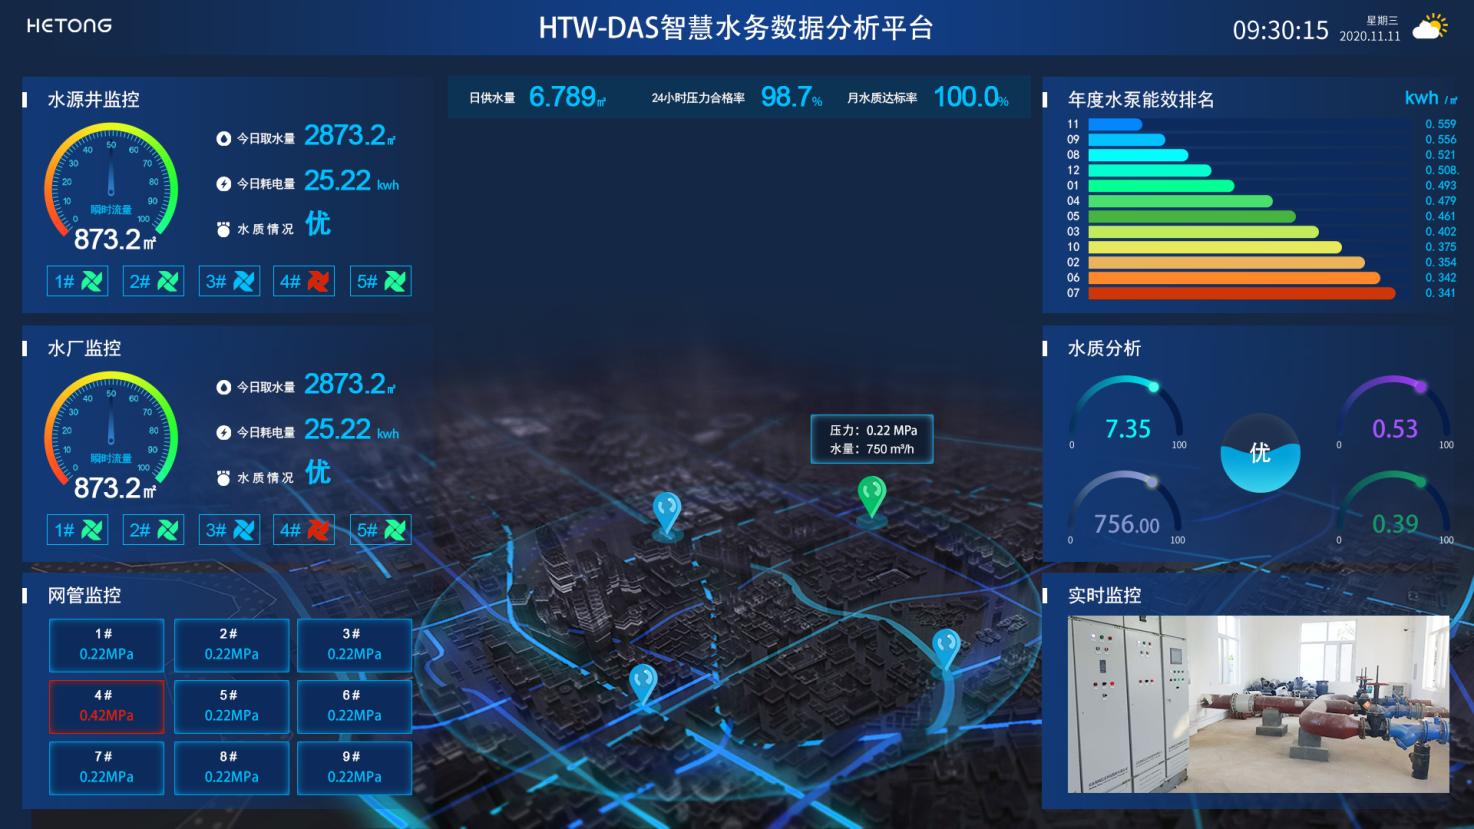 HTW-DAS今年会官网水务数据分析自动化系统